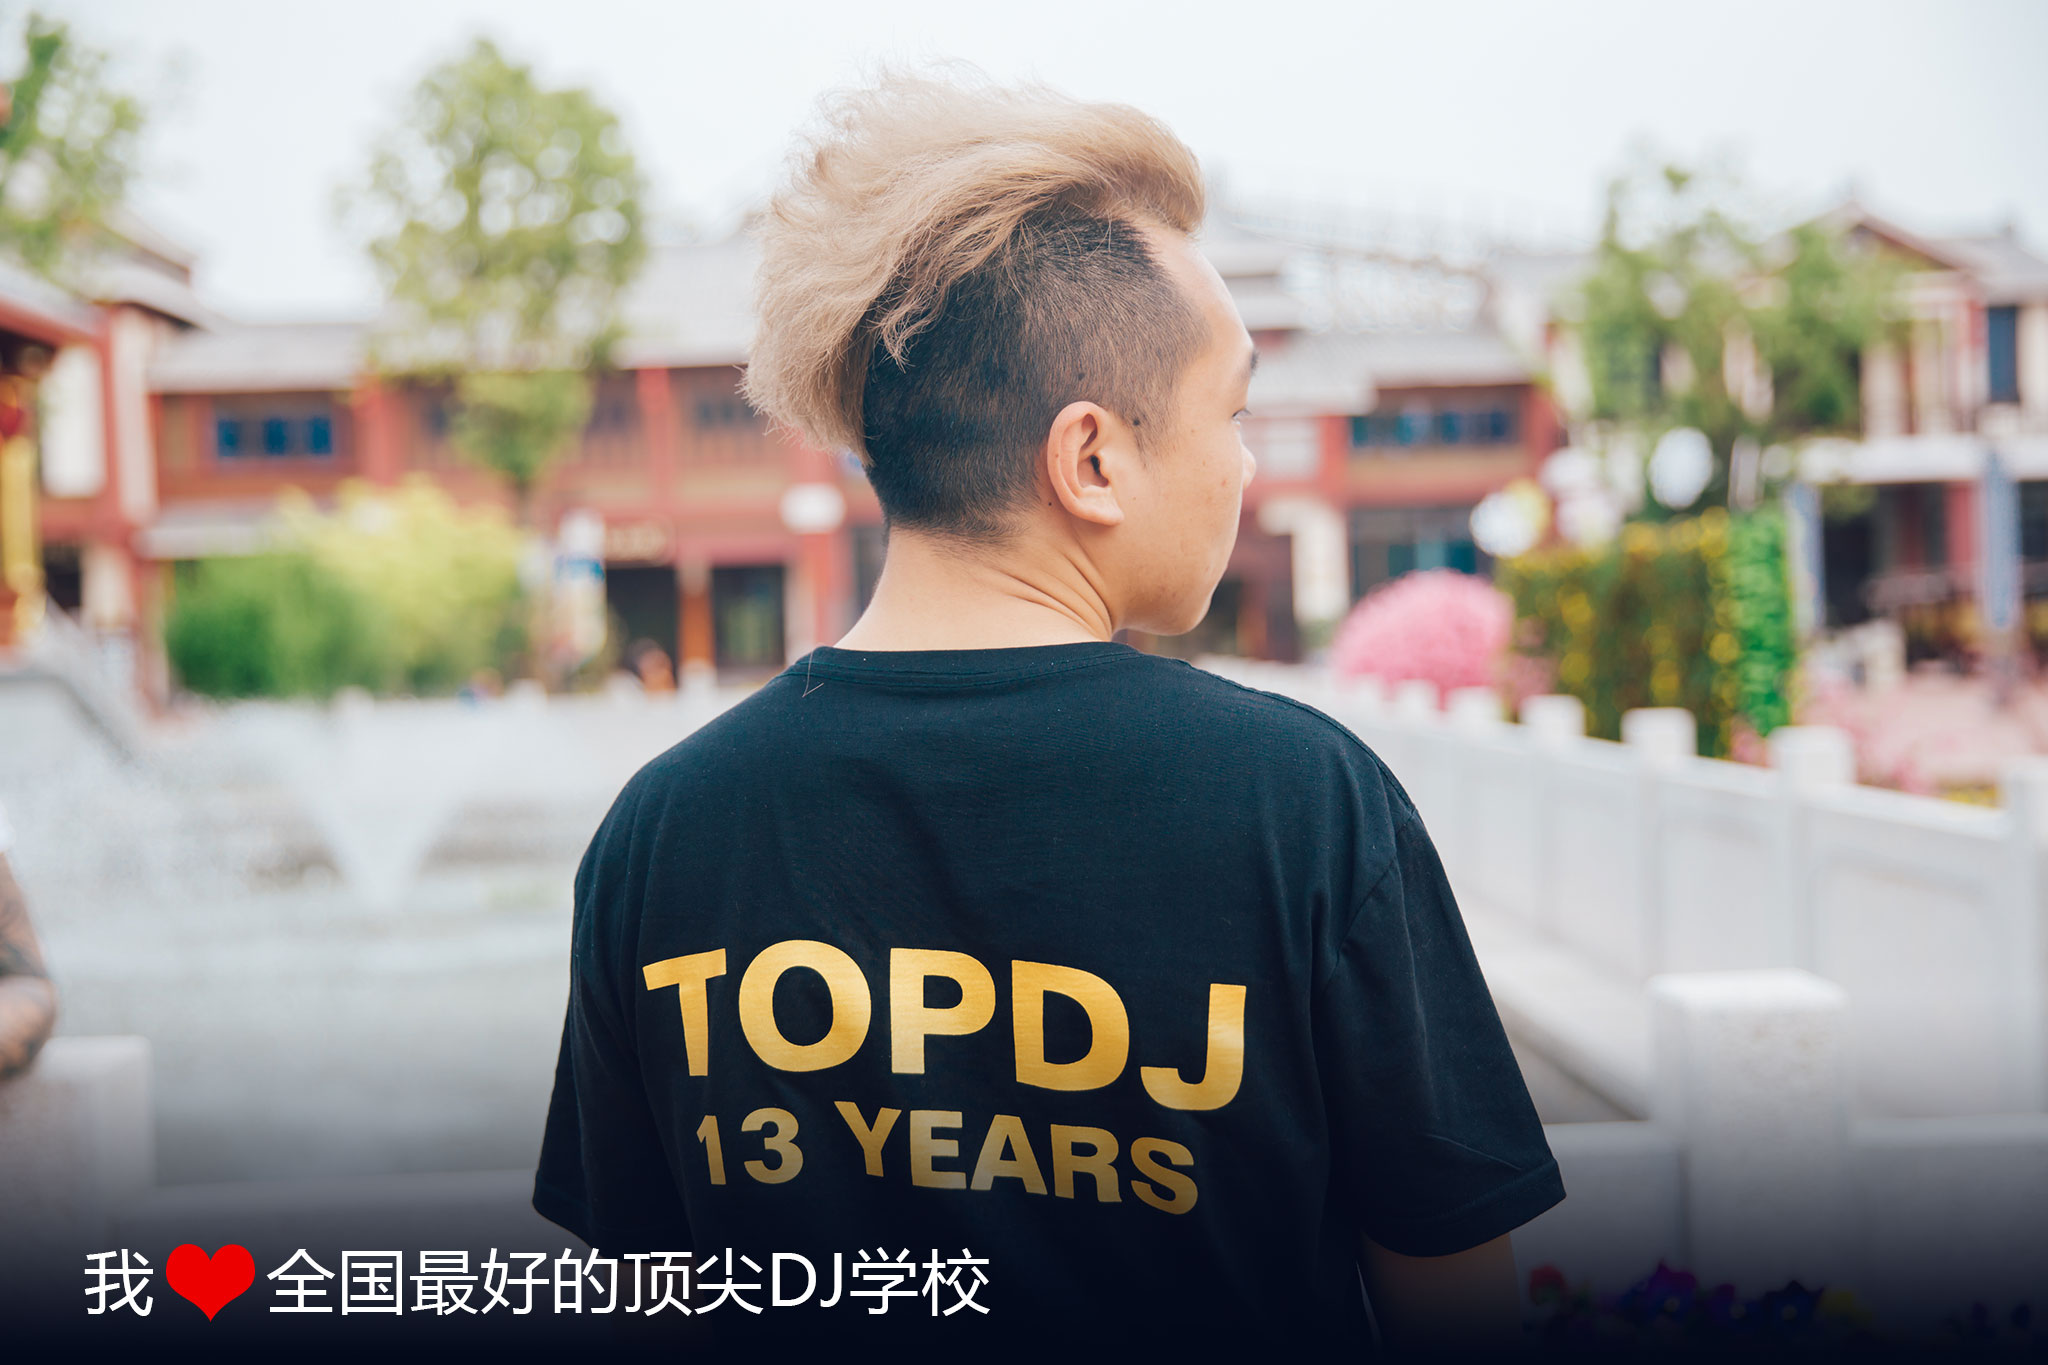 顶尖DJ培训第13年TOP DJ 13YEARS-By全国最好的DJ培训学校 0